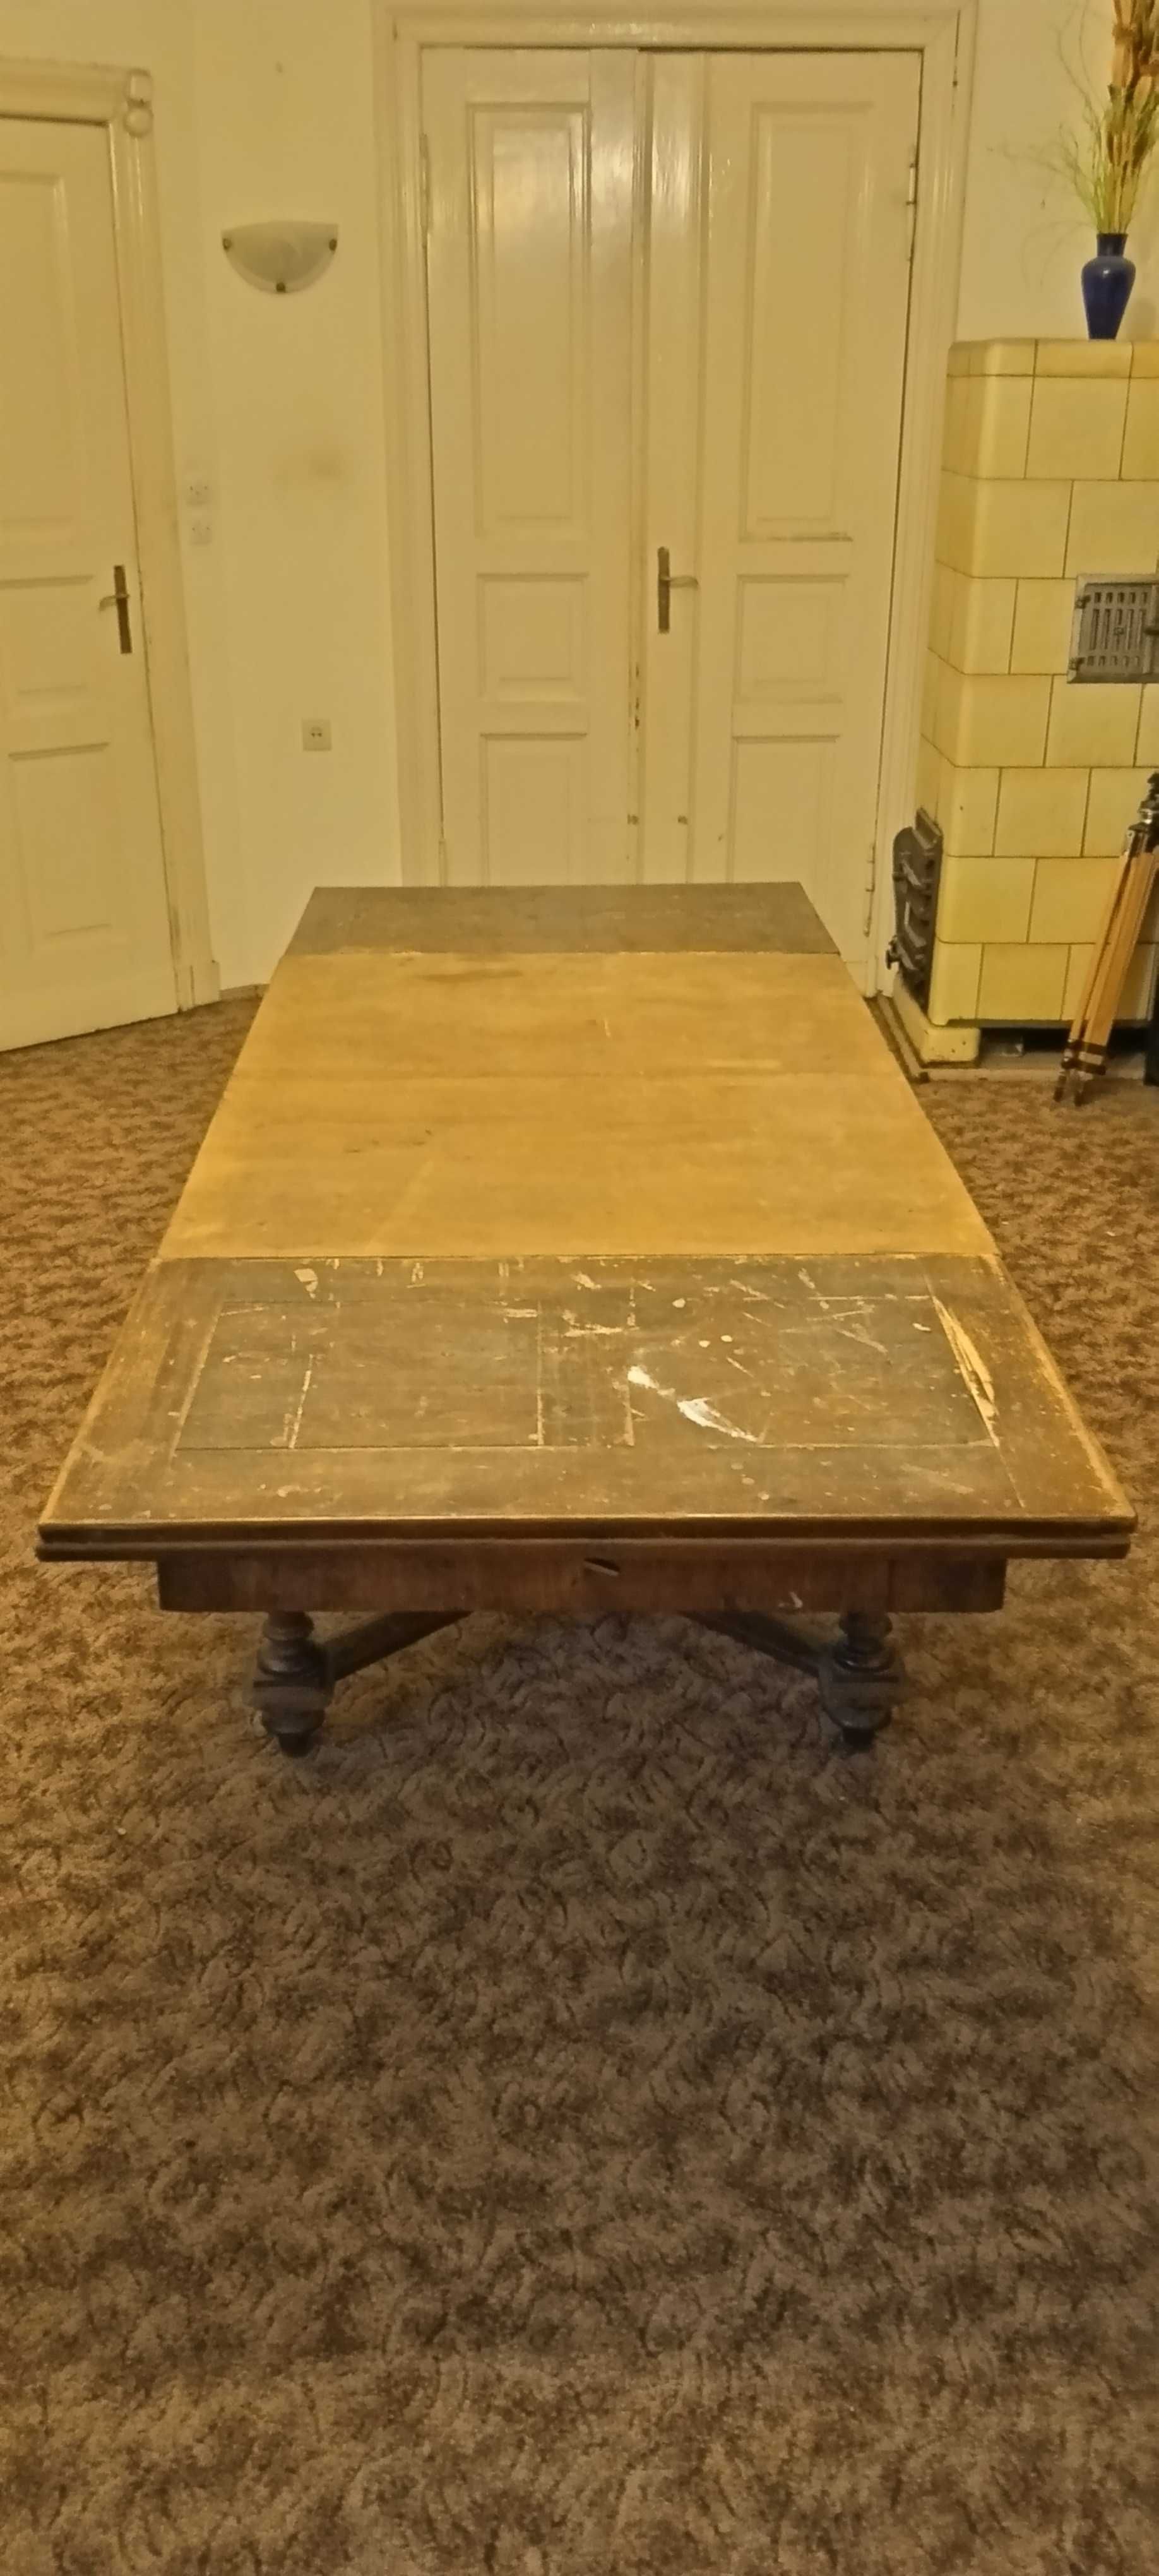 oryginalny, stary stół.